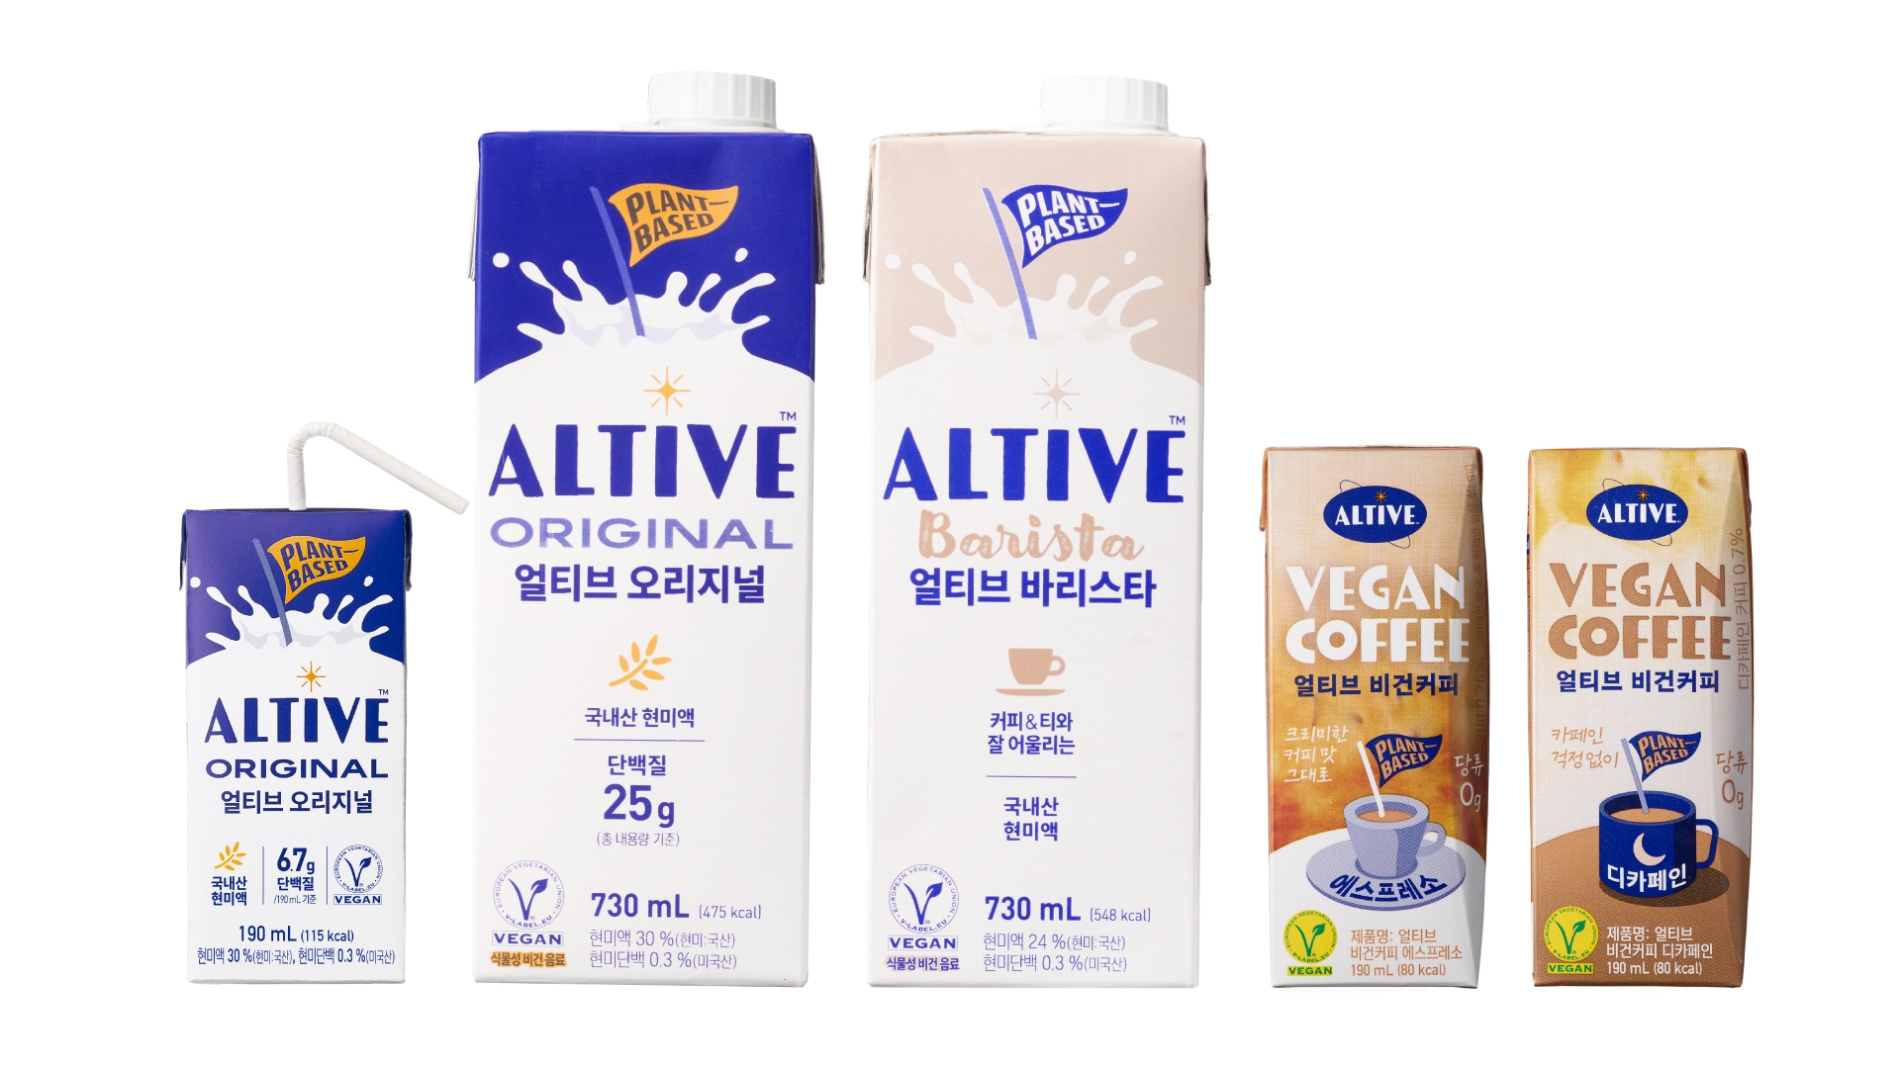 [생활경제 이슈] CJ제일제당, 식물성 대체유(乳) 브랜드 ‘얼티브’ 제품군 확대 外